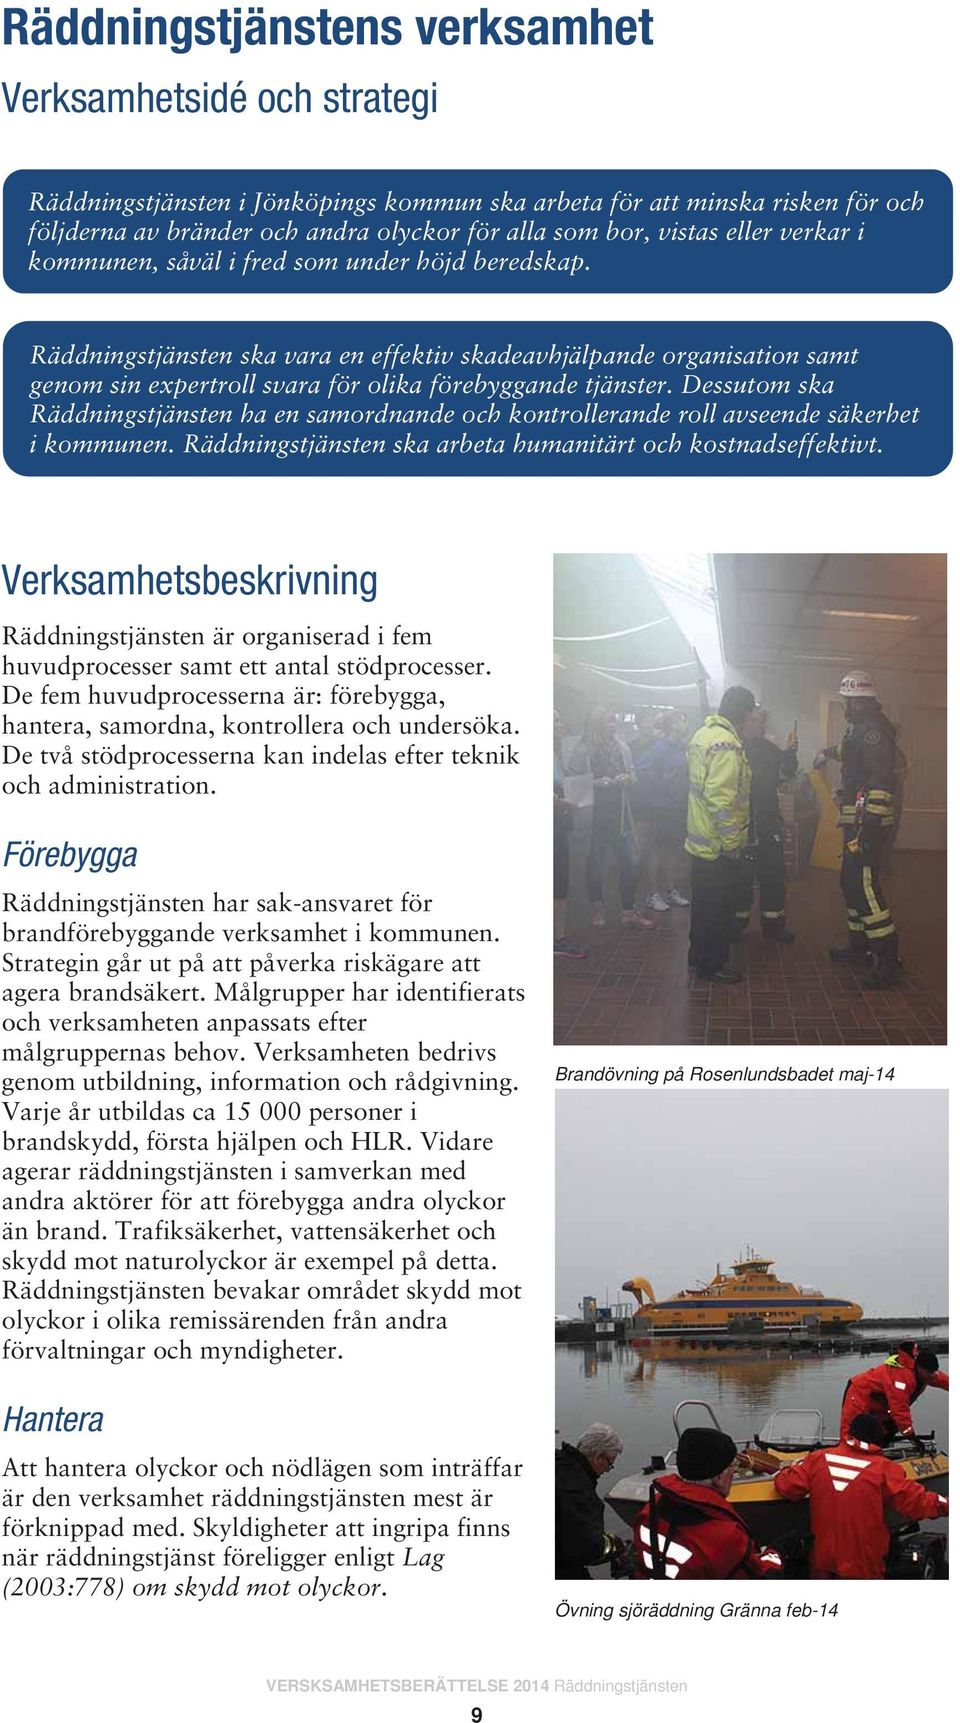 Räddningstjänsten i Jönköpings un ska arbeta för att minska risken för och följderna av bränder och andra olyckor för a Räddningstjänsten ska vara en effektiv skadeavhjälpande organisation samt genom